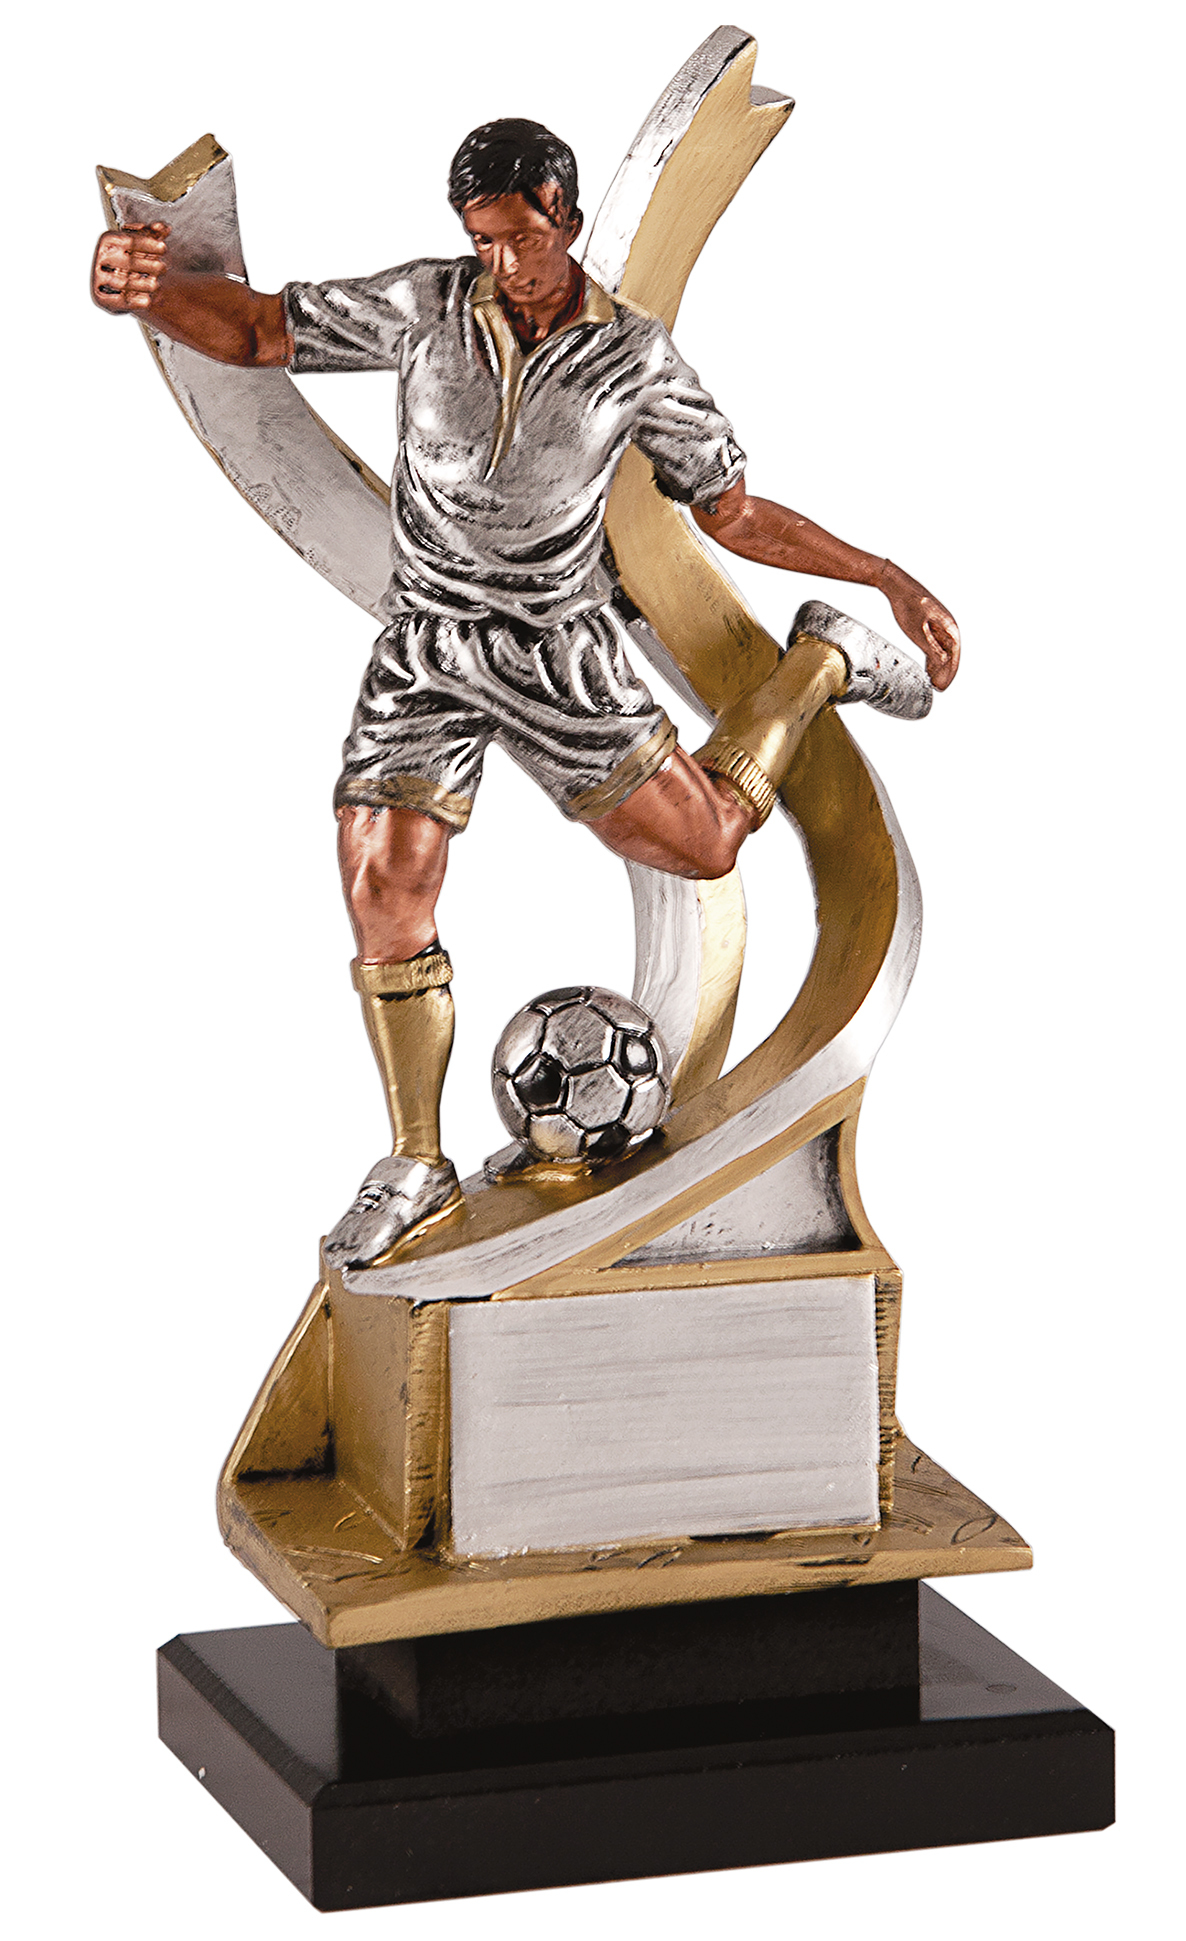 Trofeo en acrílico Bota y balón de fútbol online - Trofeos de futbol